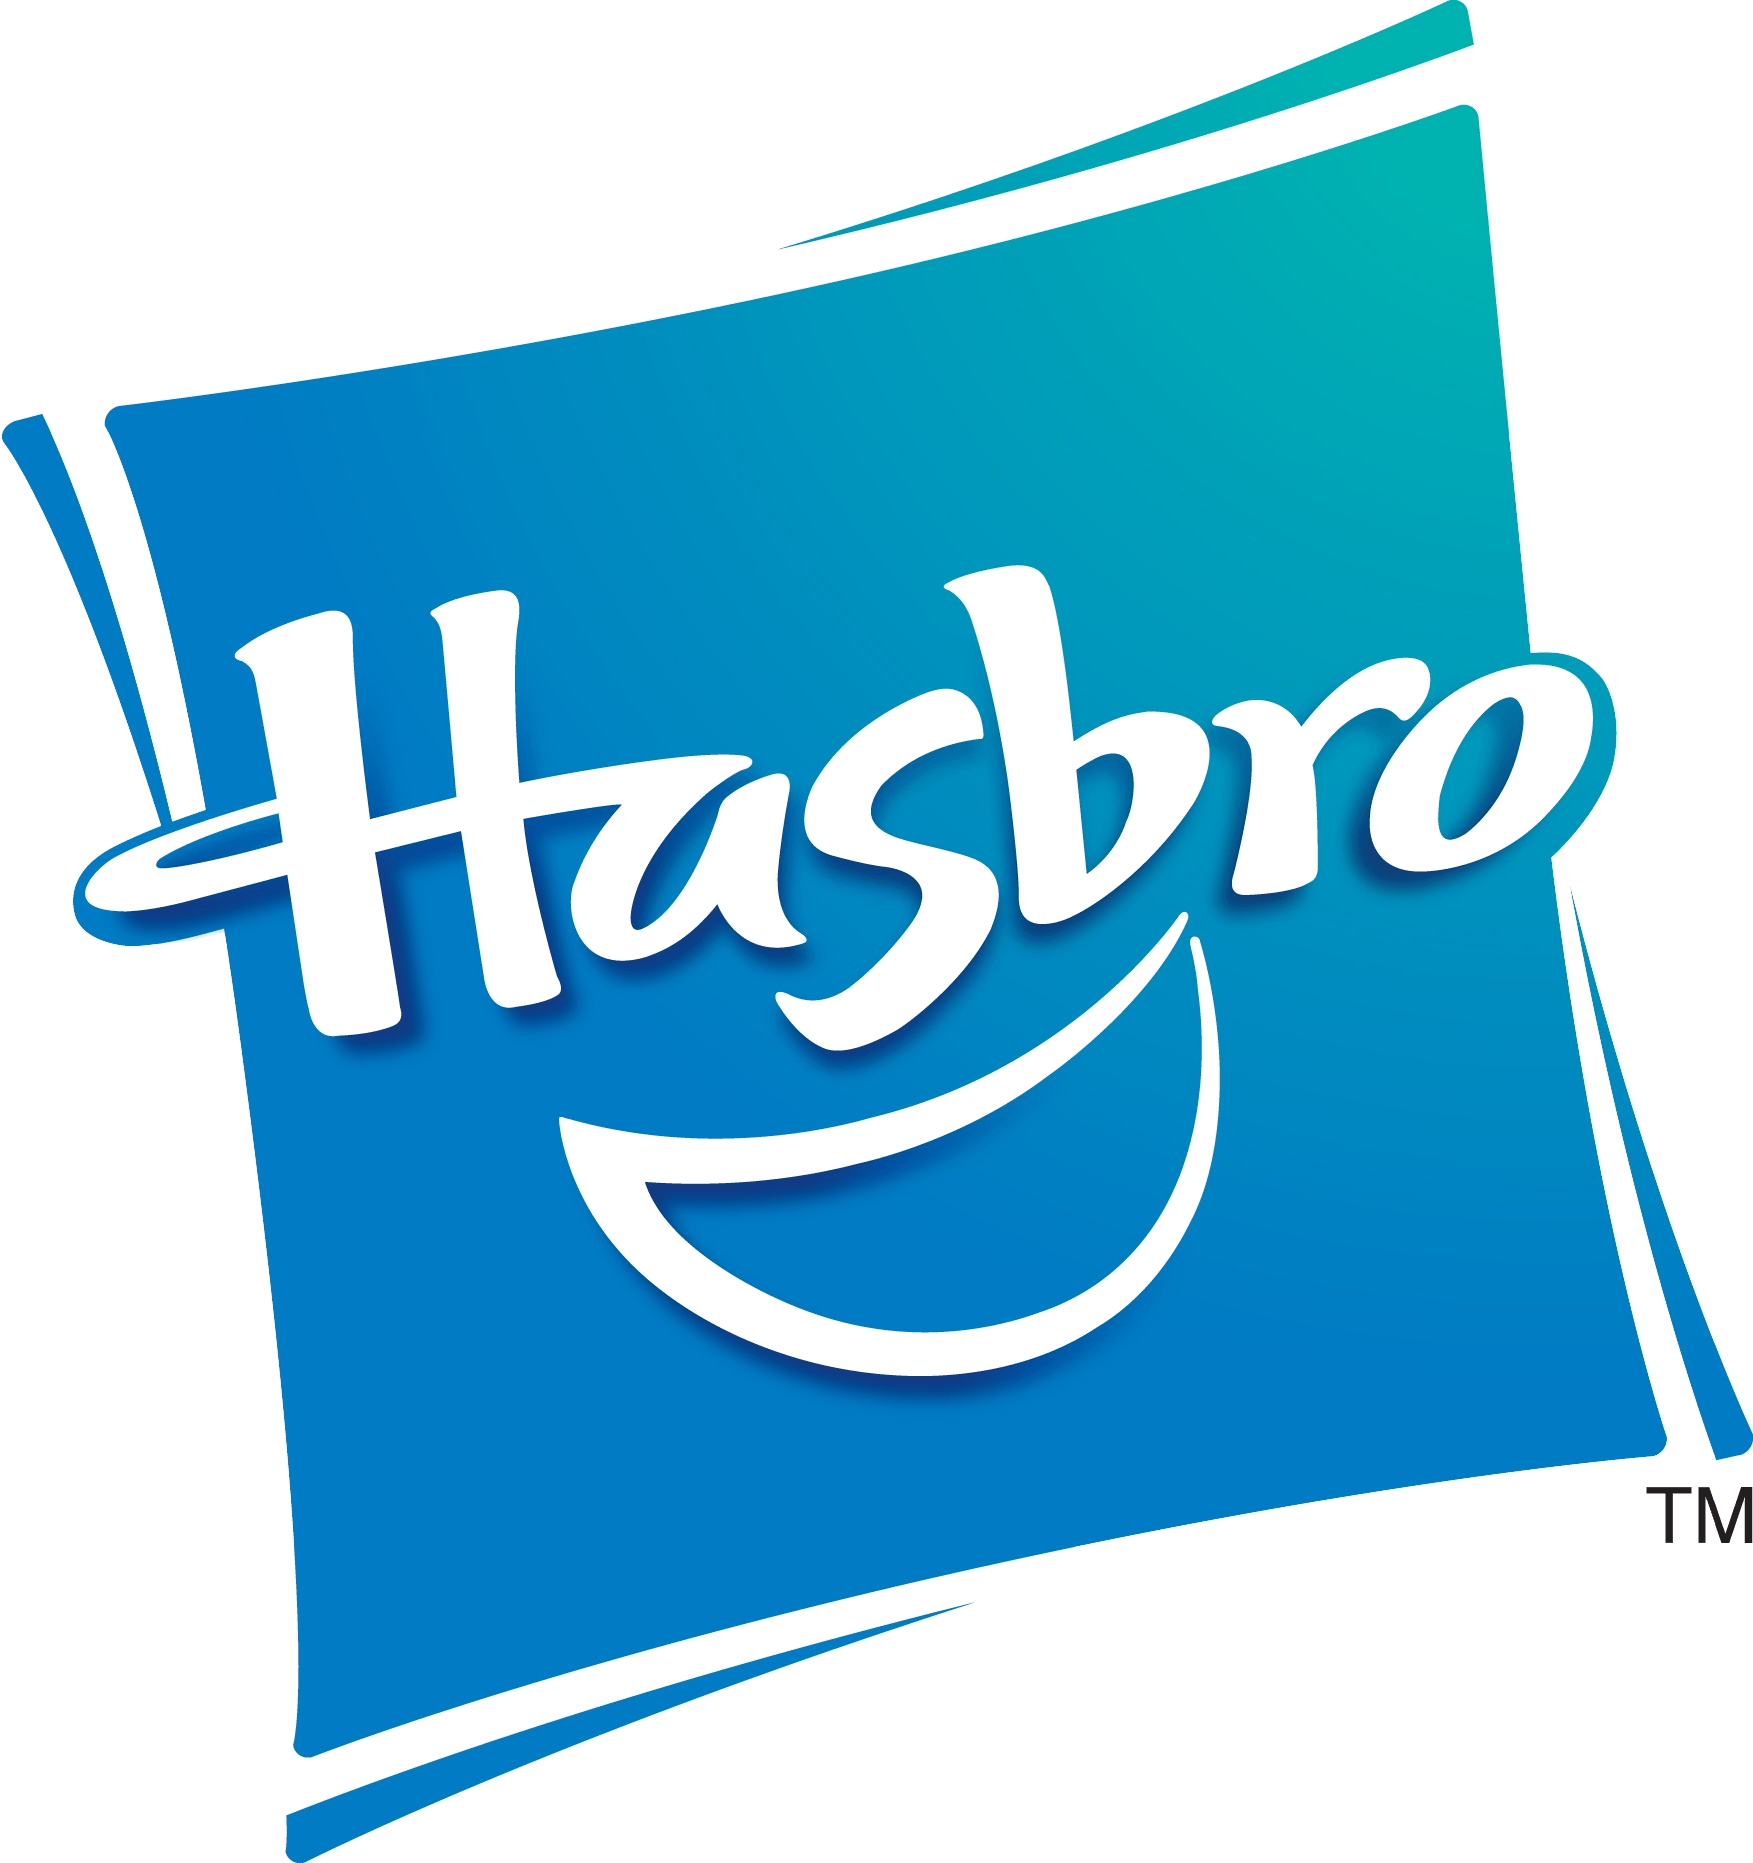 Hasbro Logo - Image - Hasbro logo new.png | Logopedia | FANDOM powered by Wikia